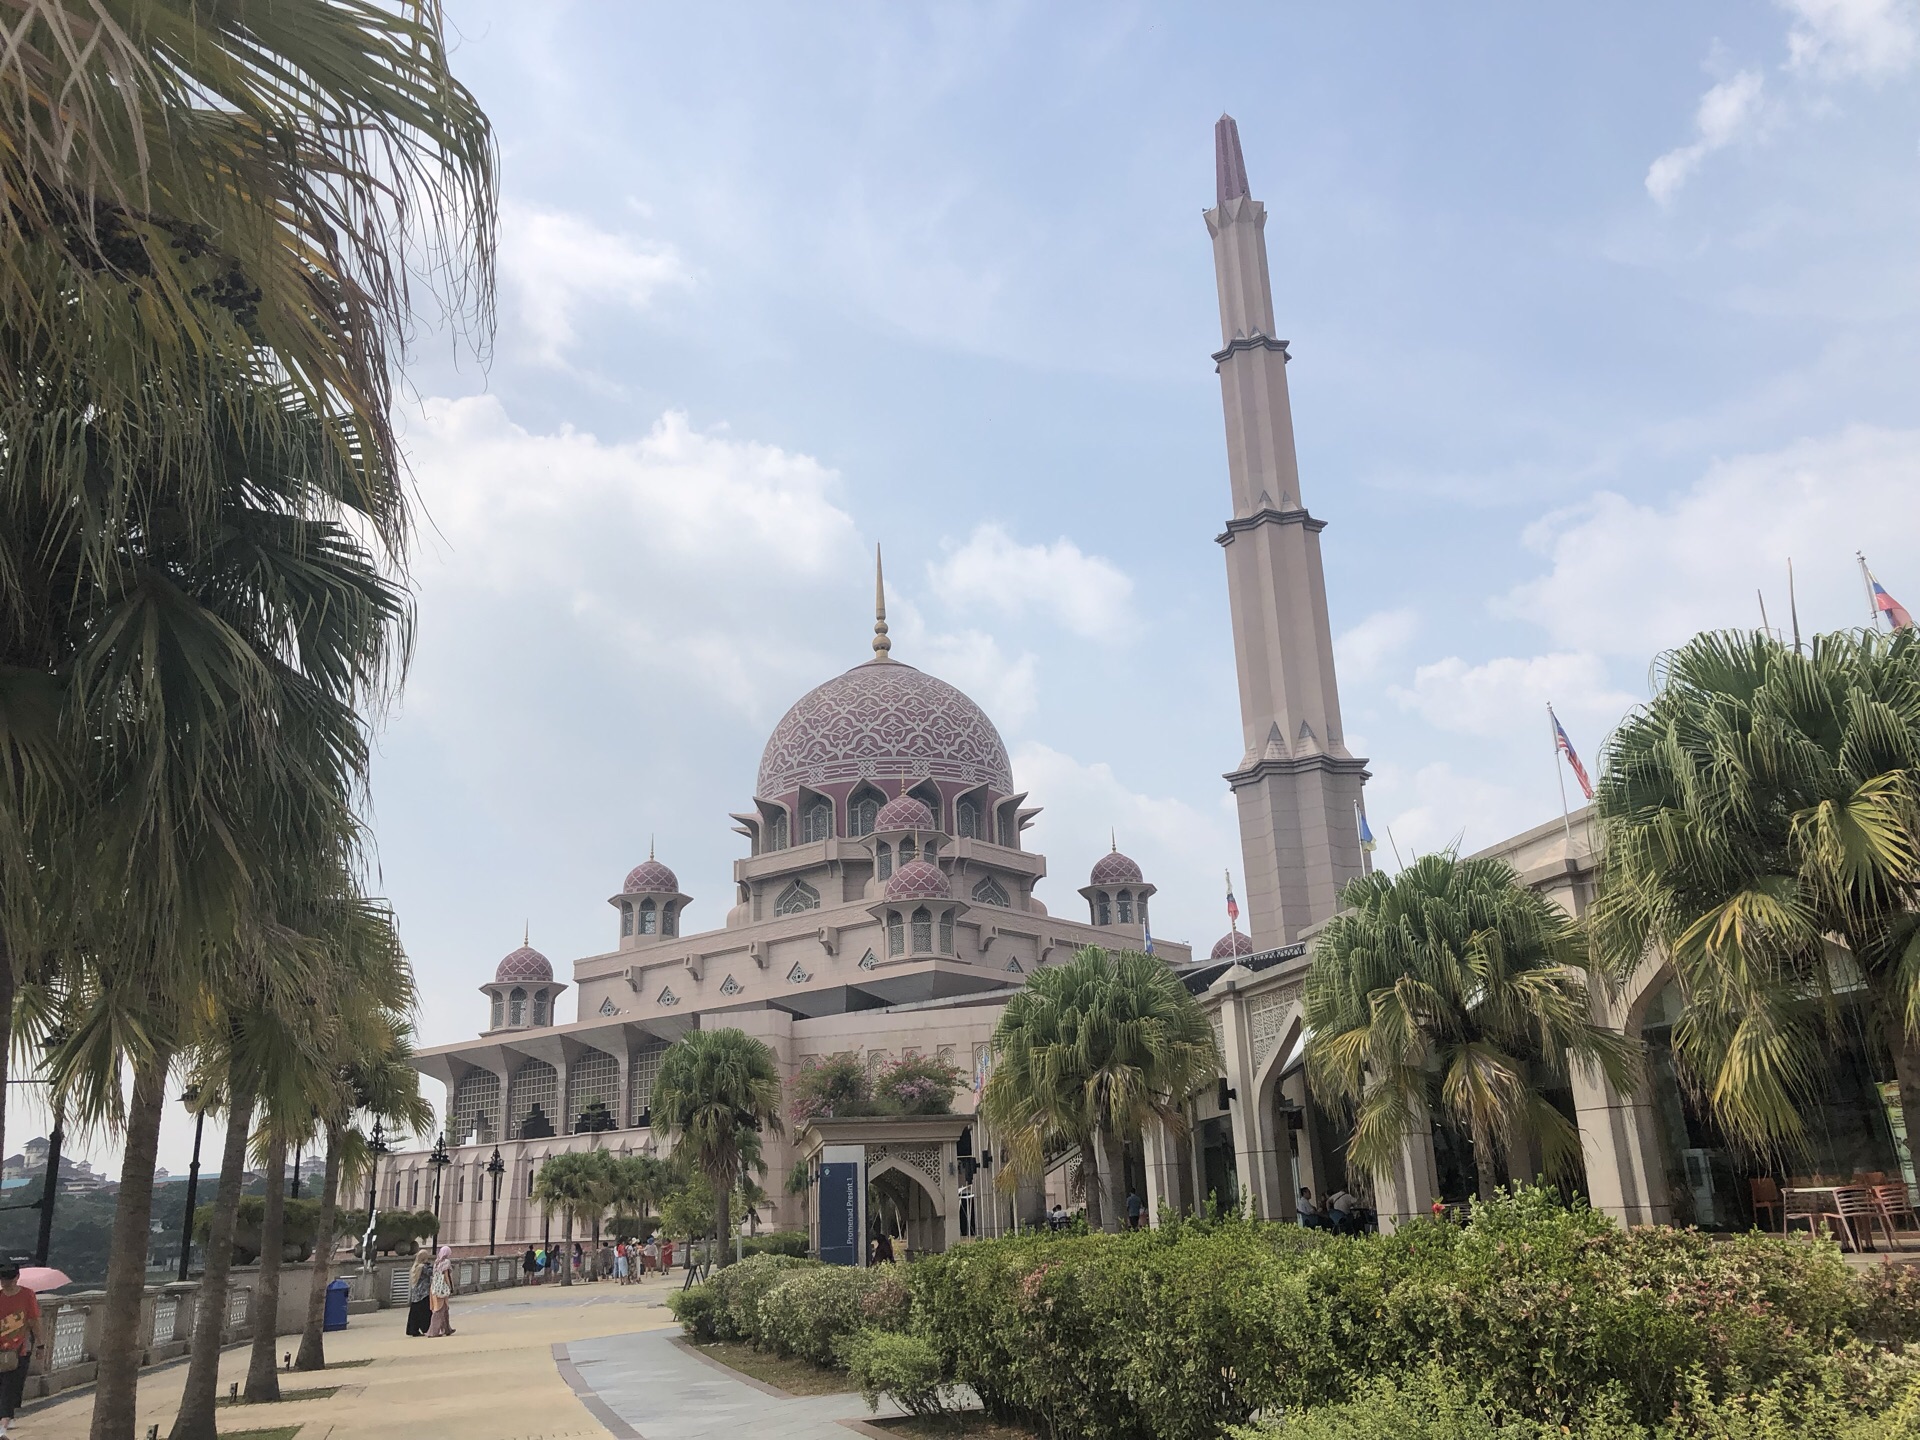 早就听说窦店清真寺是华北地区最大的清真寺，一直想去看看